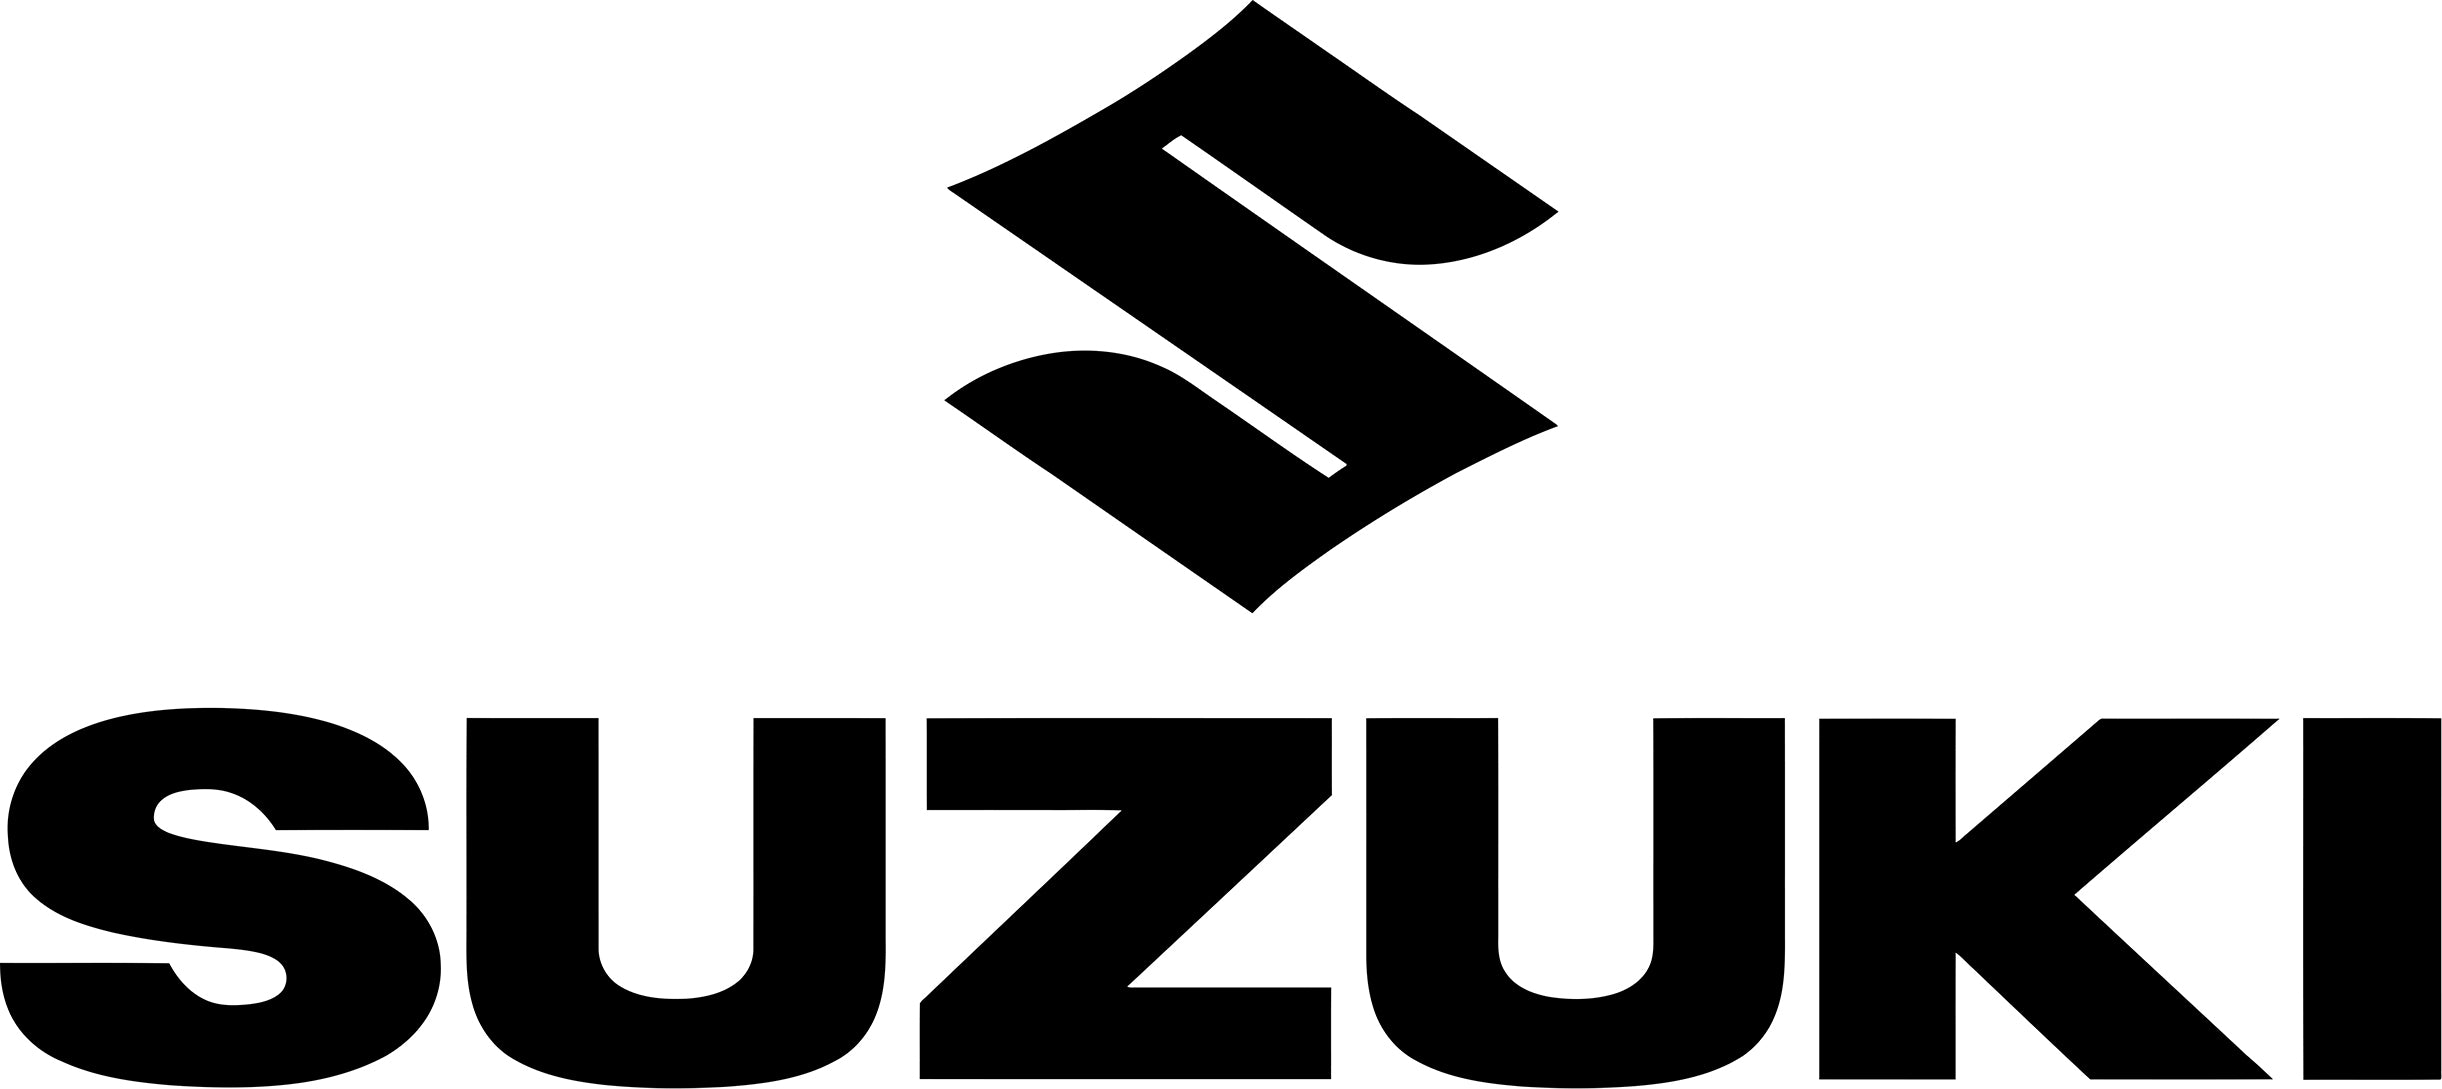 Suzuki Logo Decal / Sticker - Tacticalmindz.com